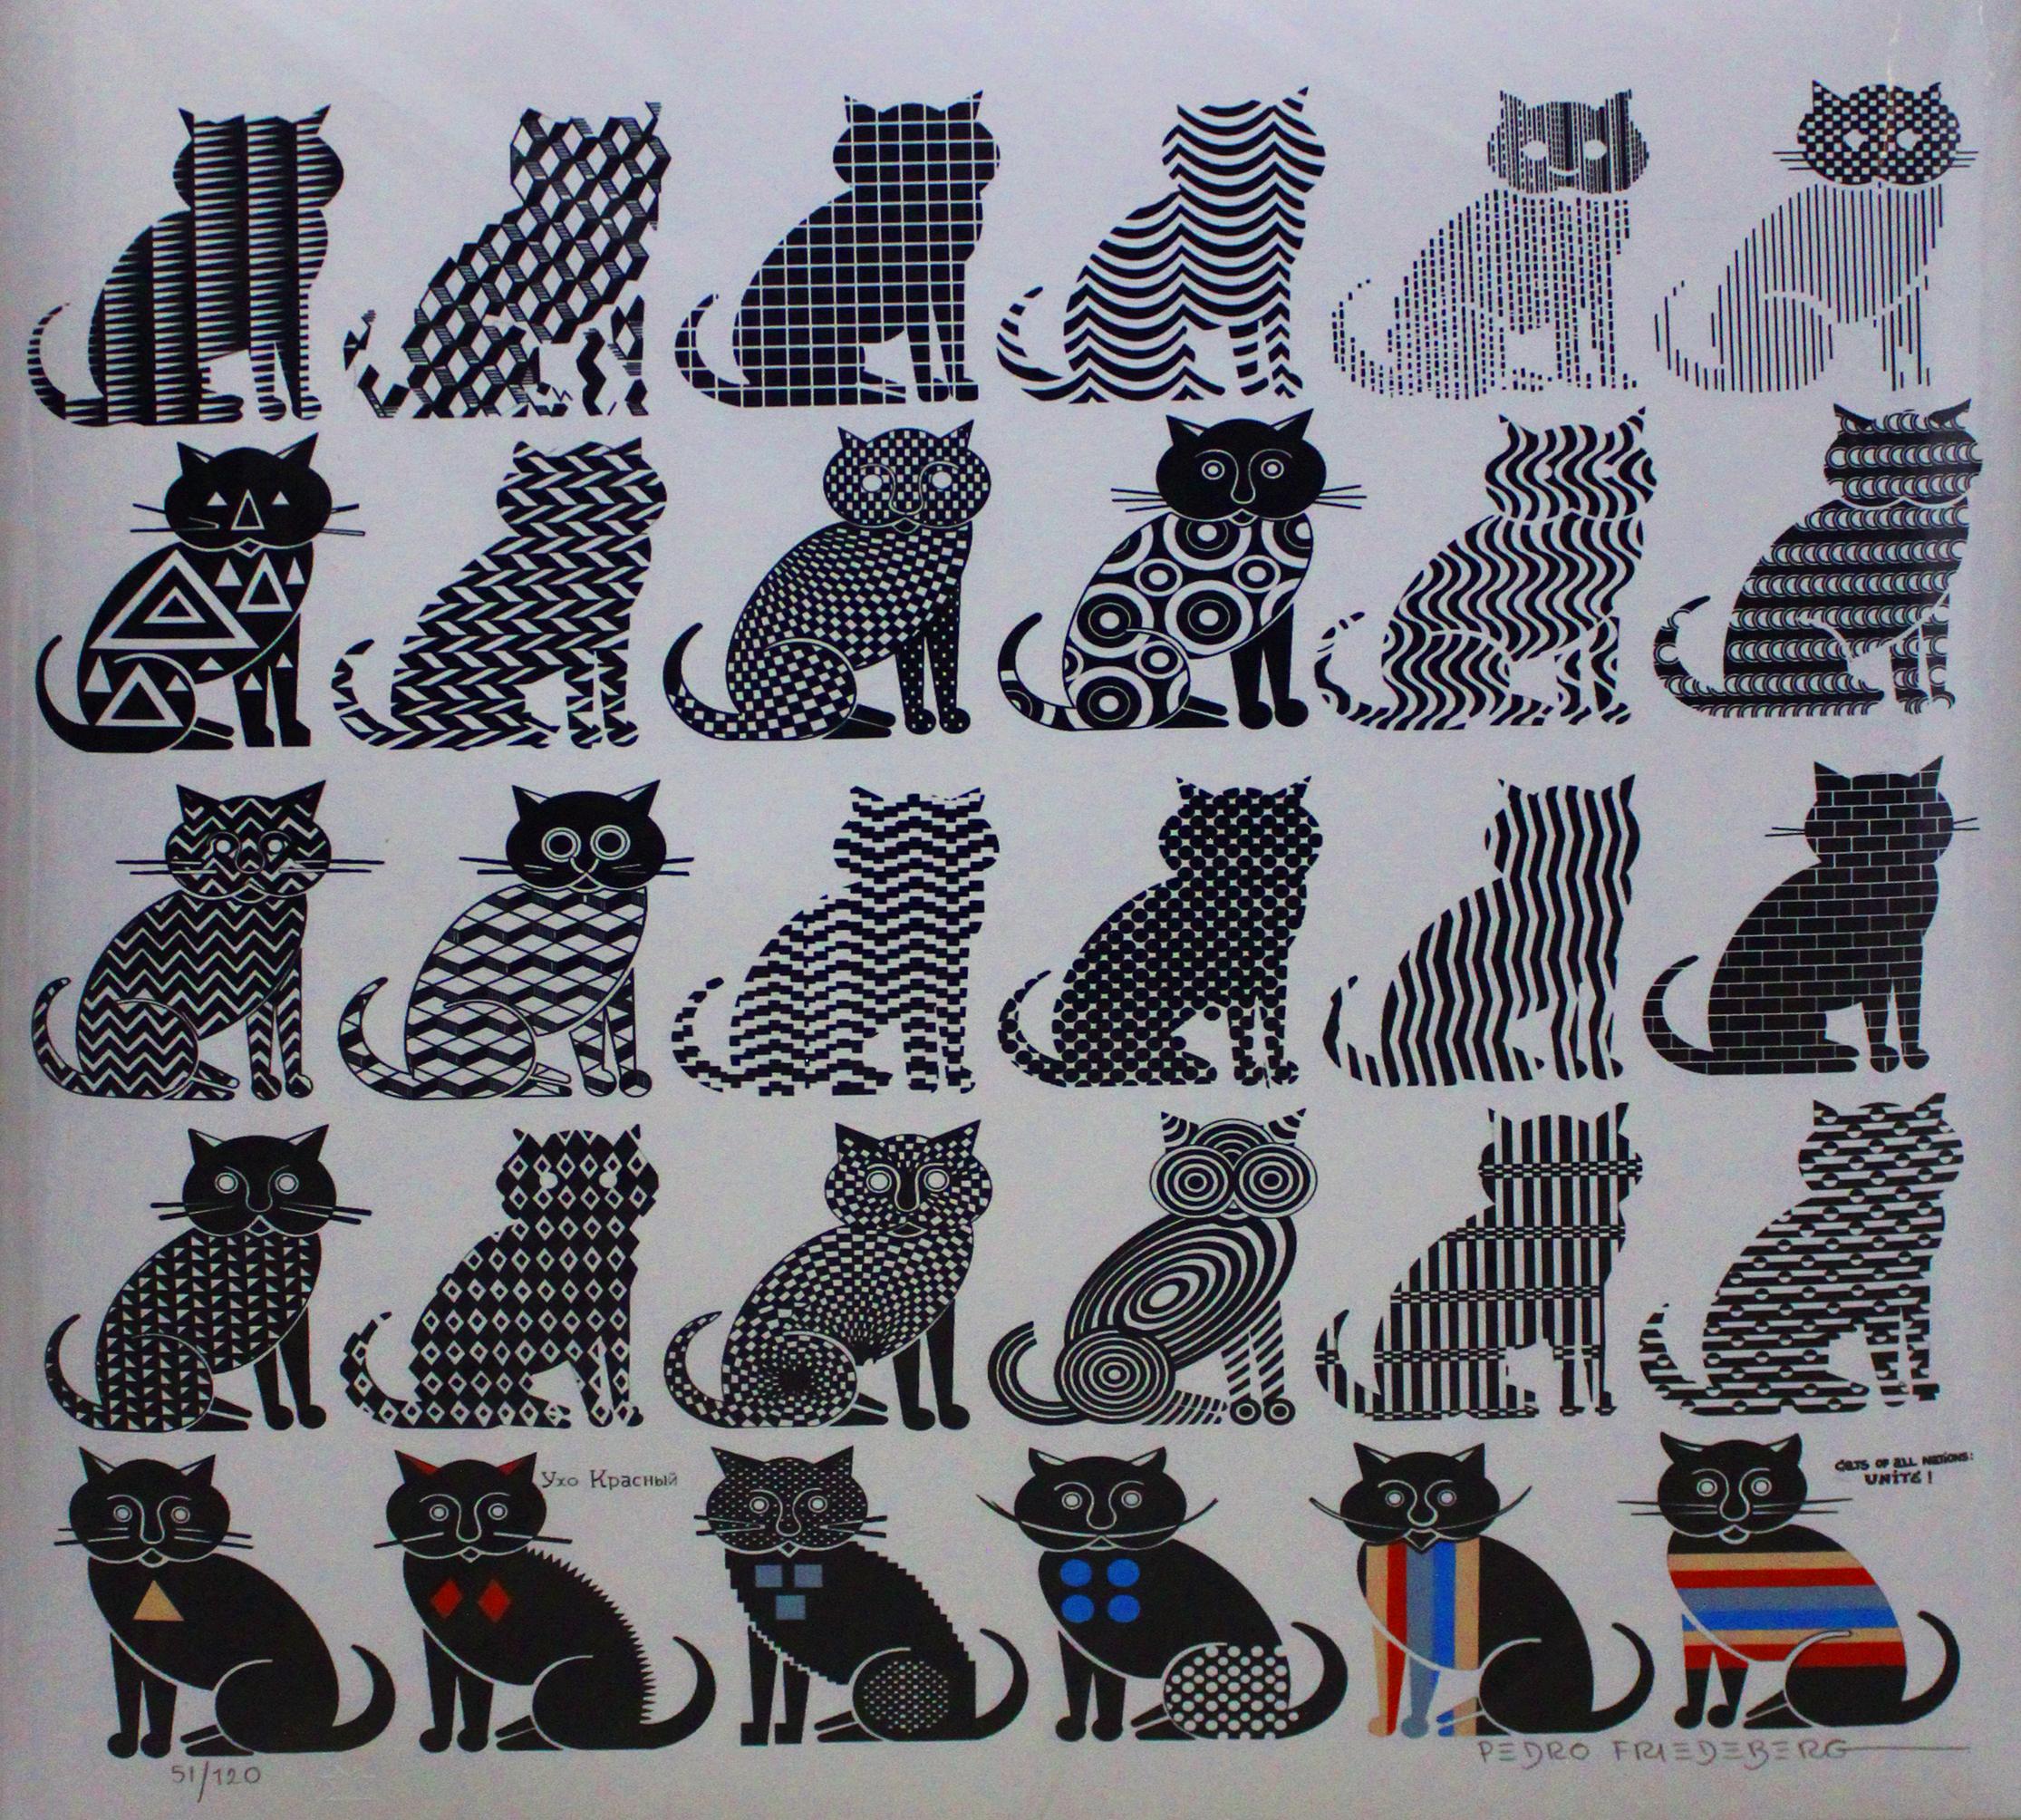 Pedro Friedeberg Abstract Print – Katzen aller Nationen vereinigt euch!